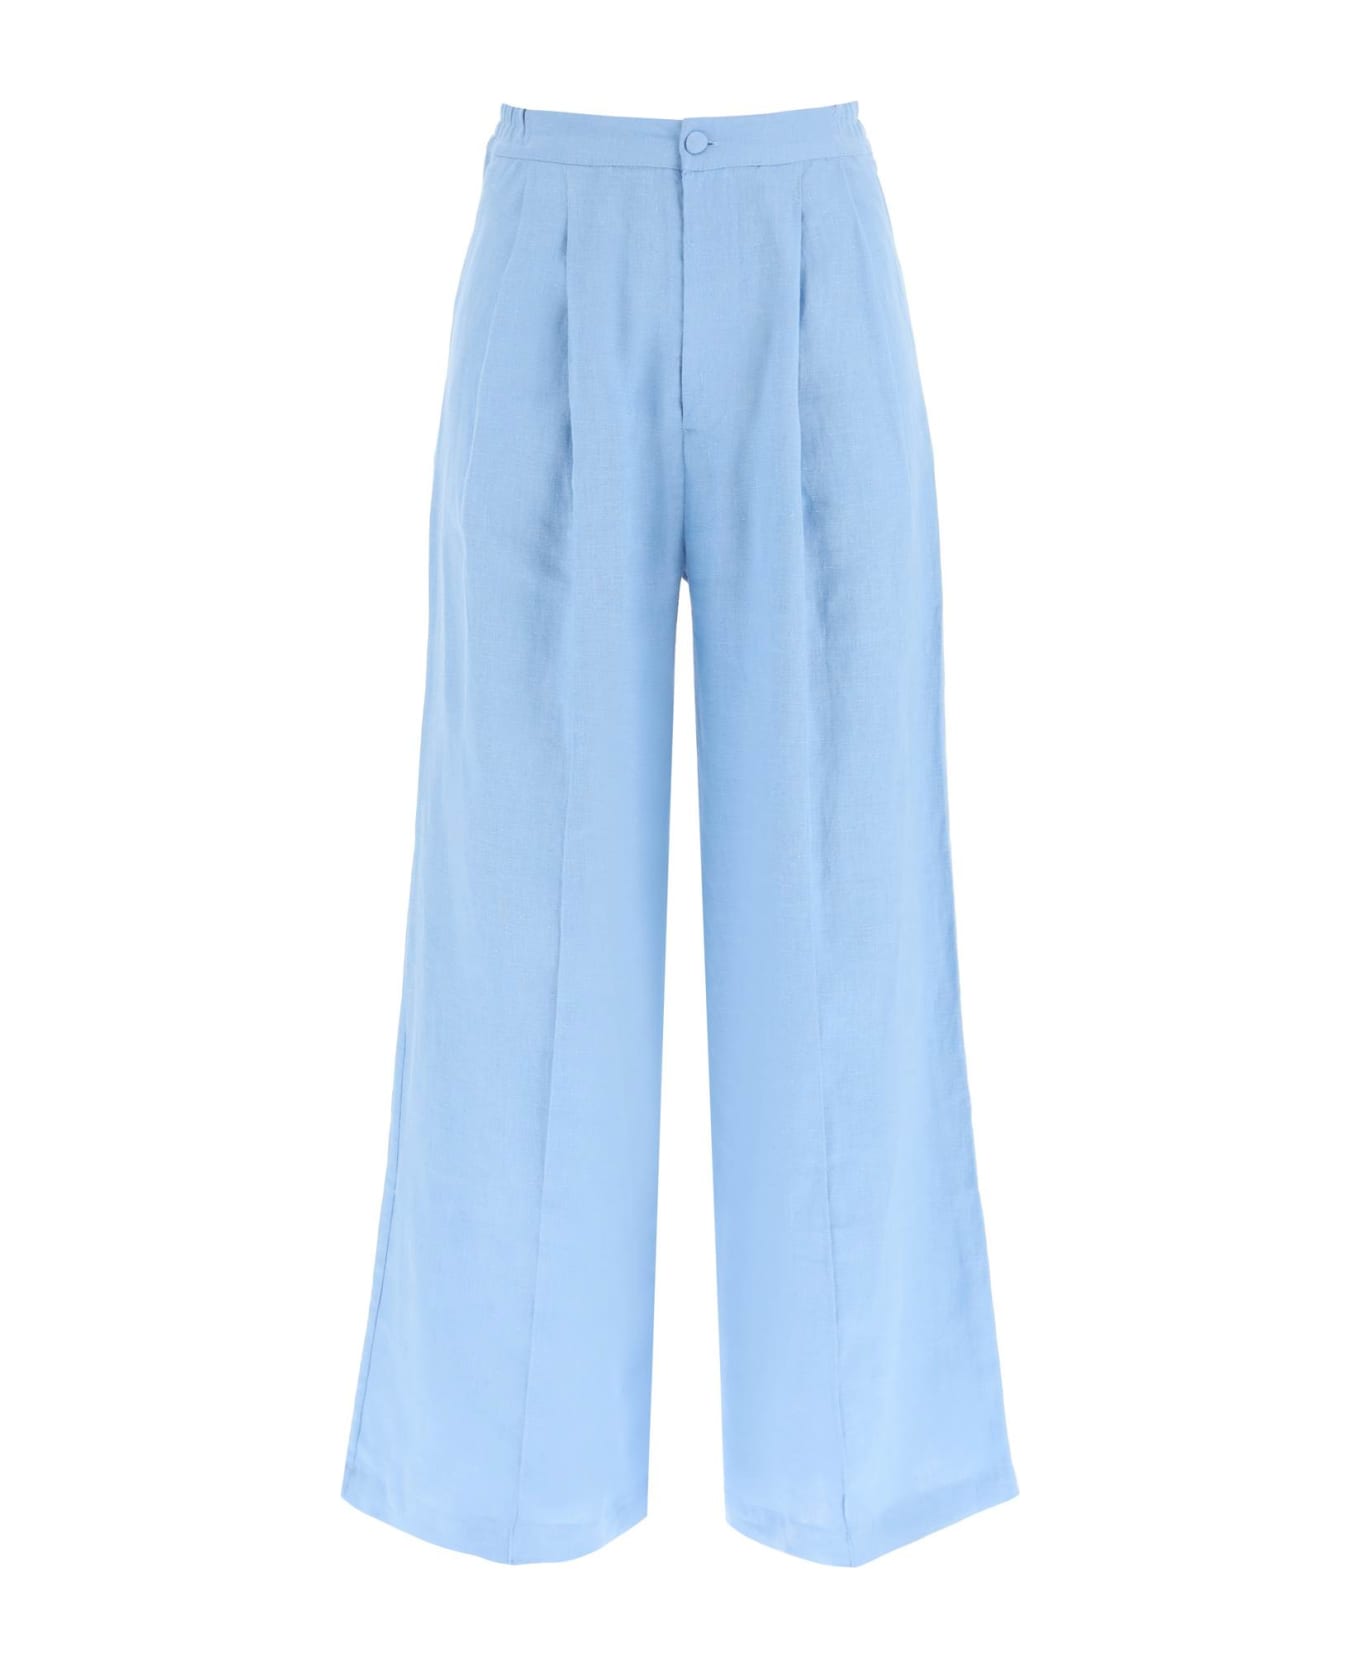 Sleeper 'dinasty' Linen Pants - BLUE (Light blue)